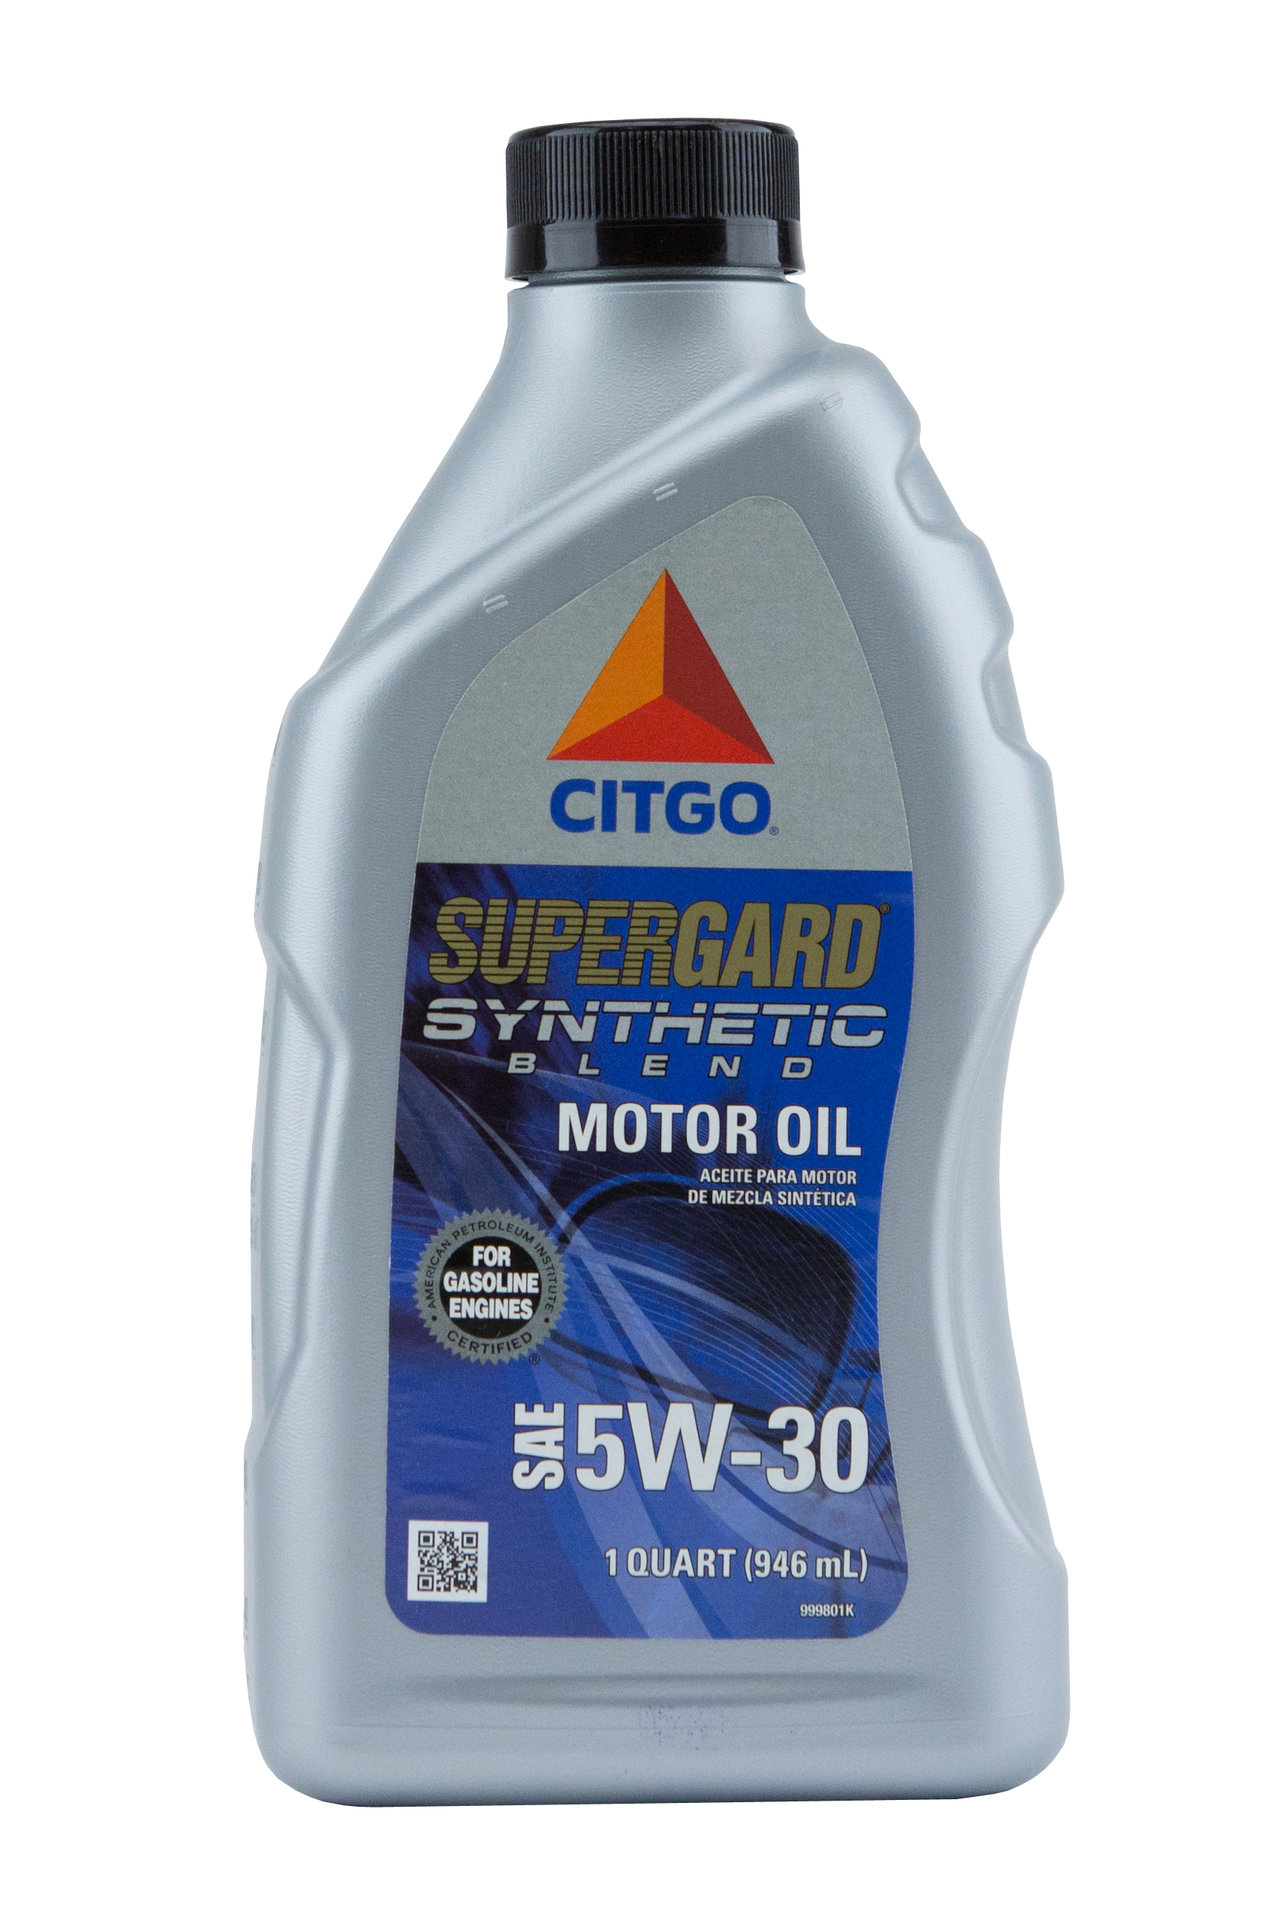 citgo-supergard-5w30-motor-oil-online-yoder-oil-co-inc